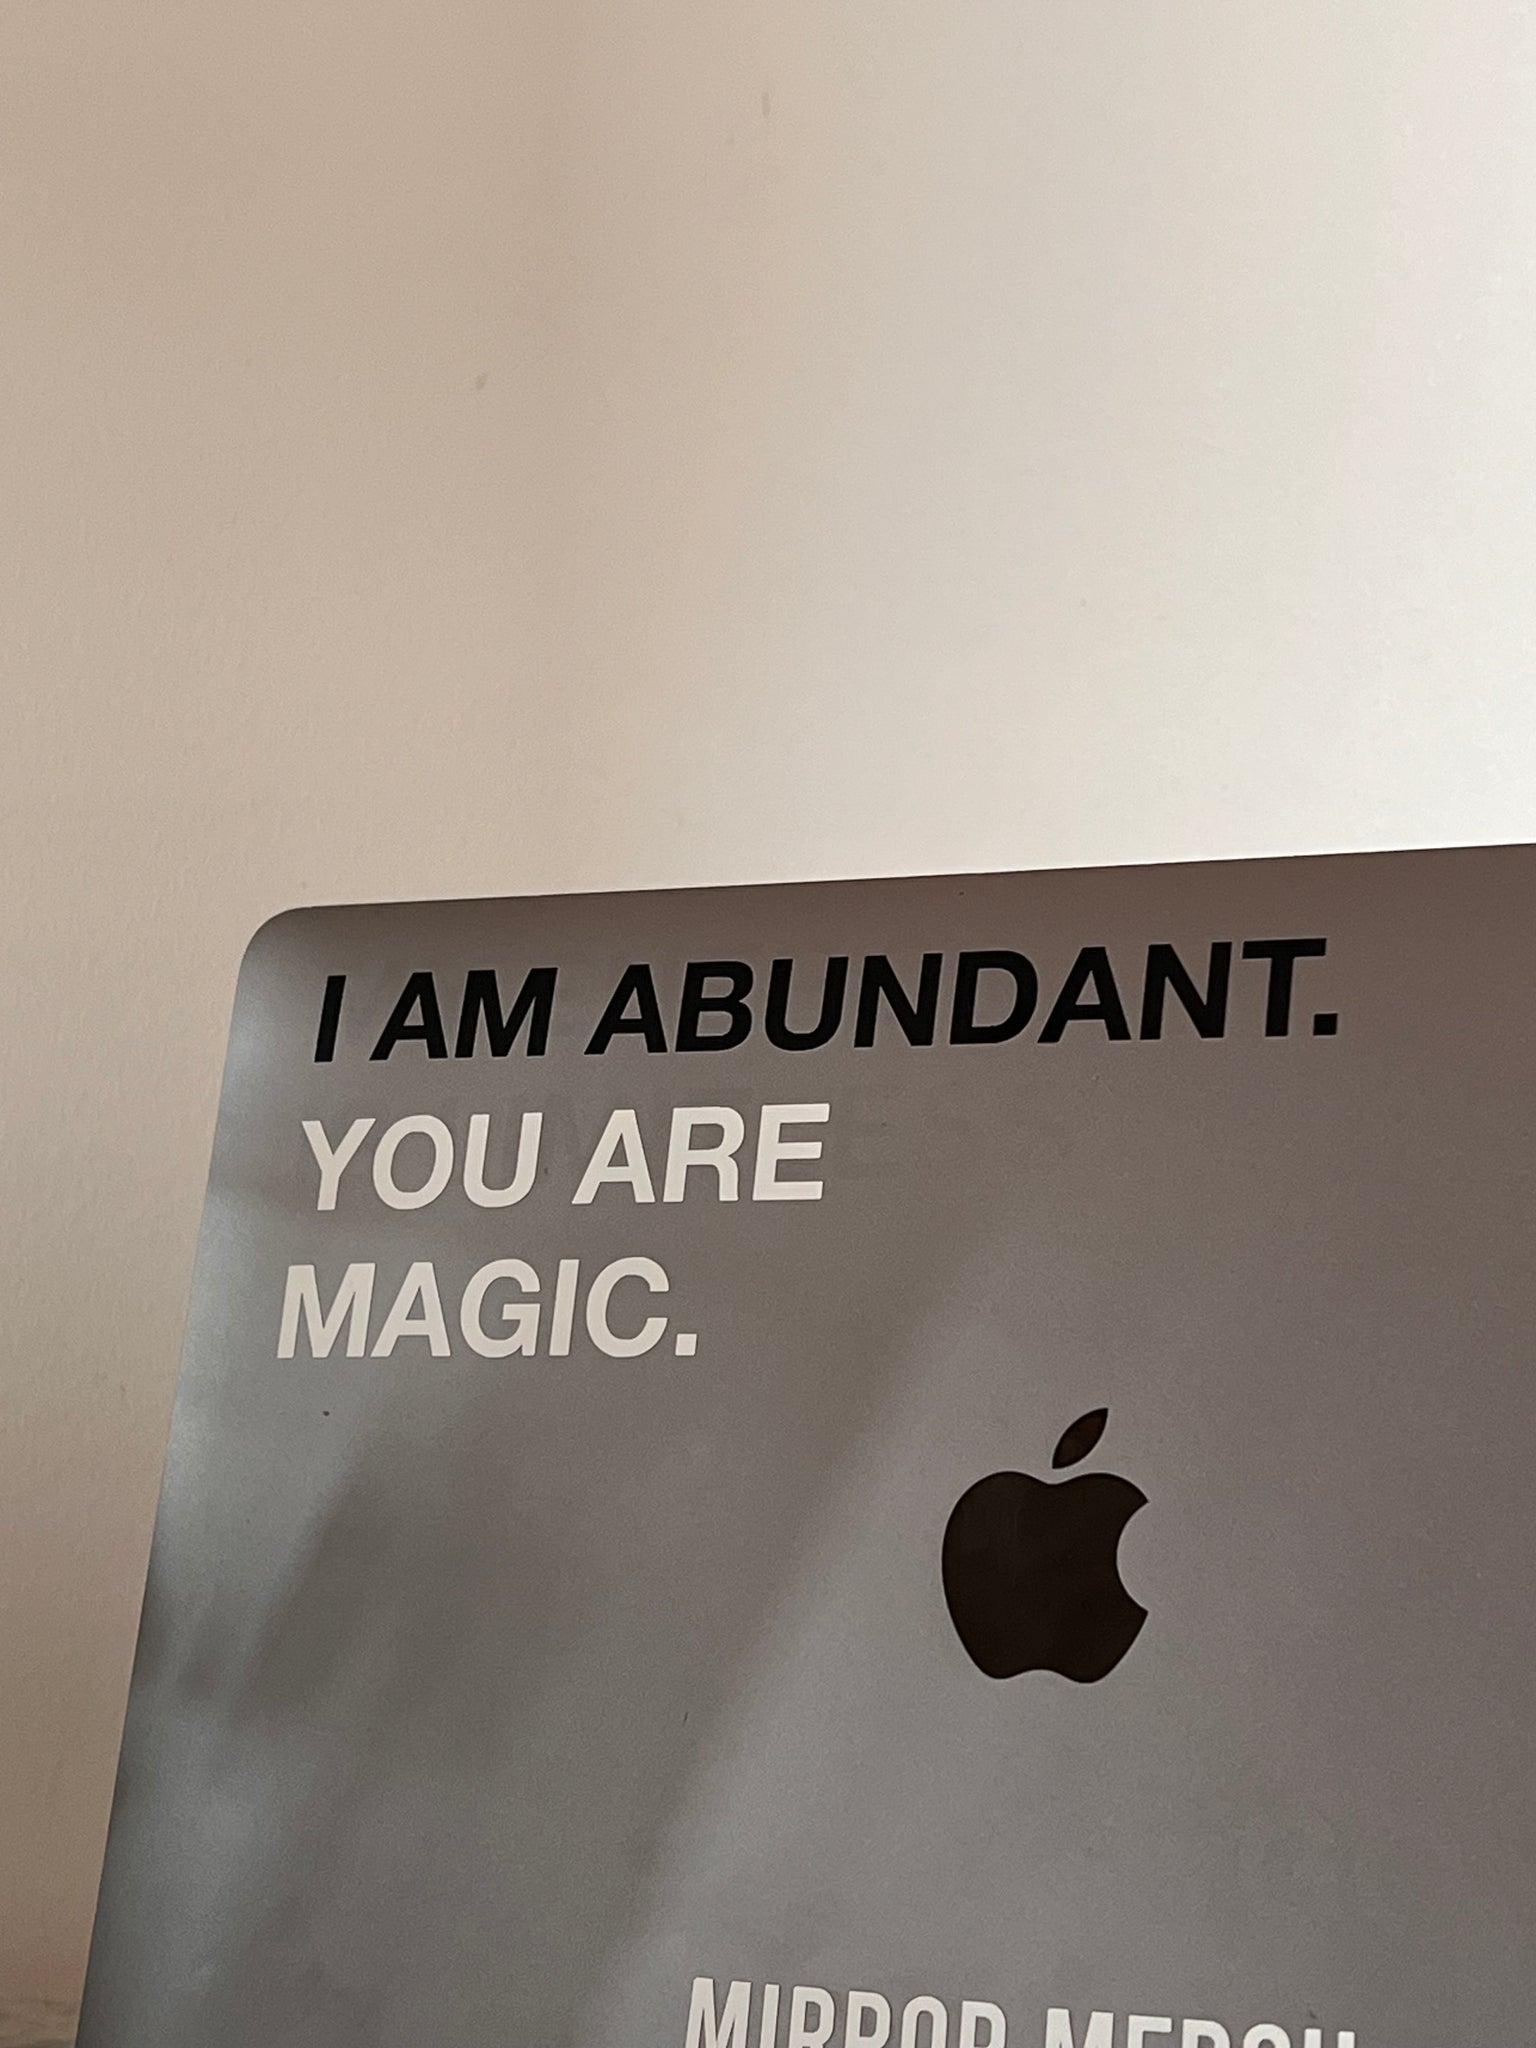 you are magic sticker